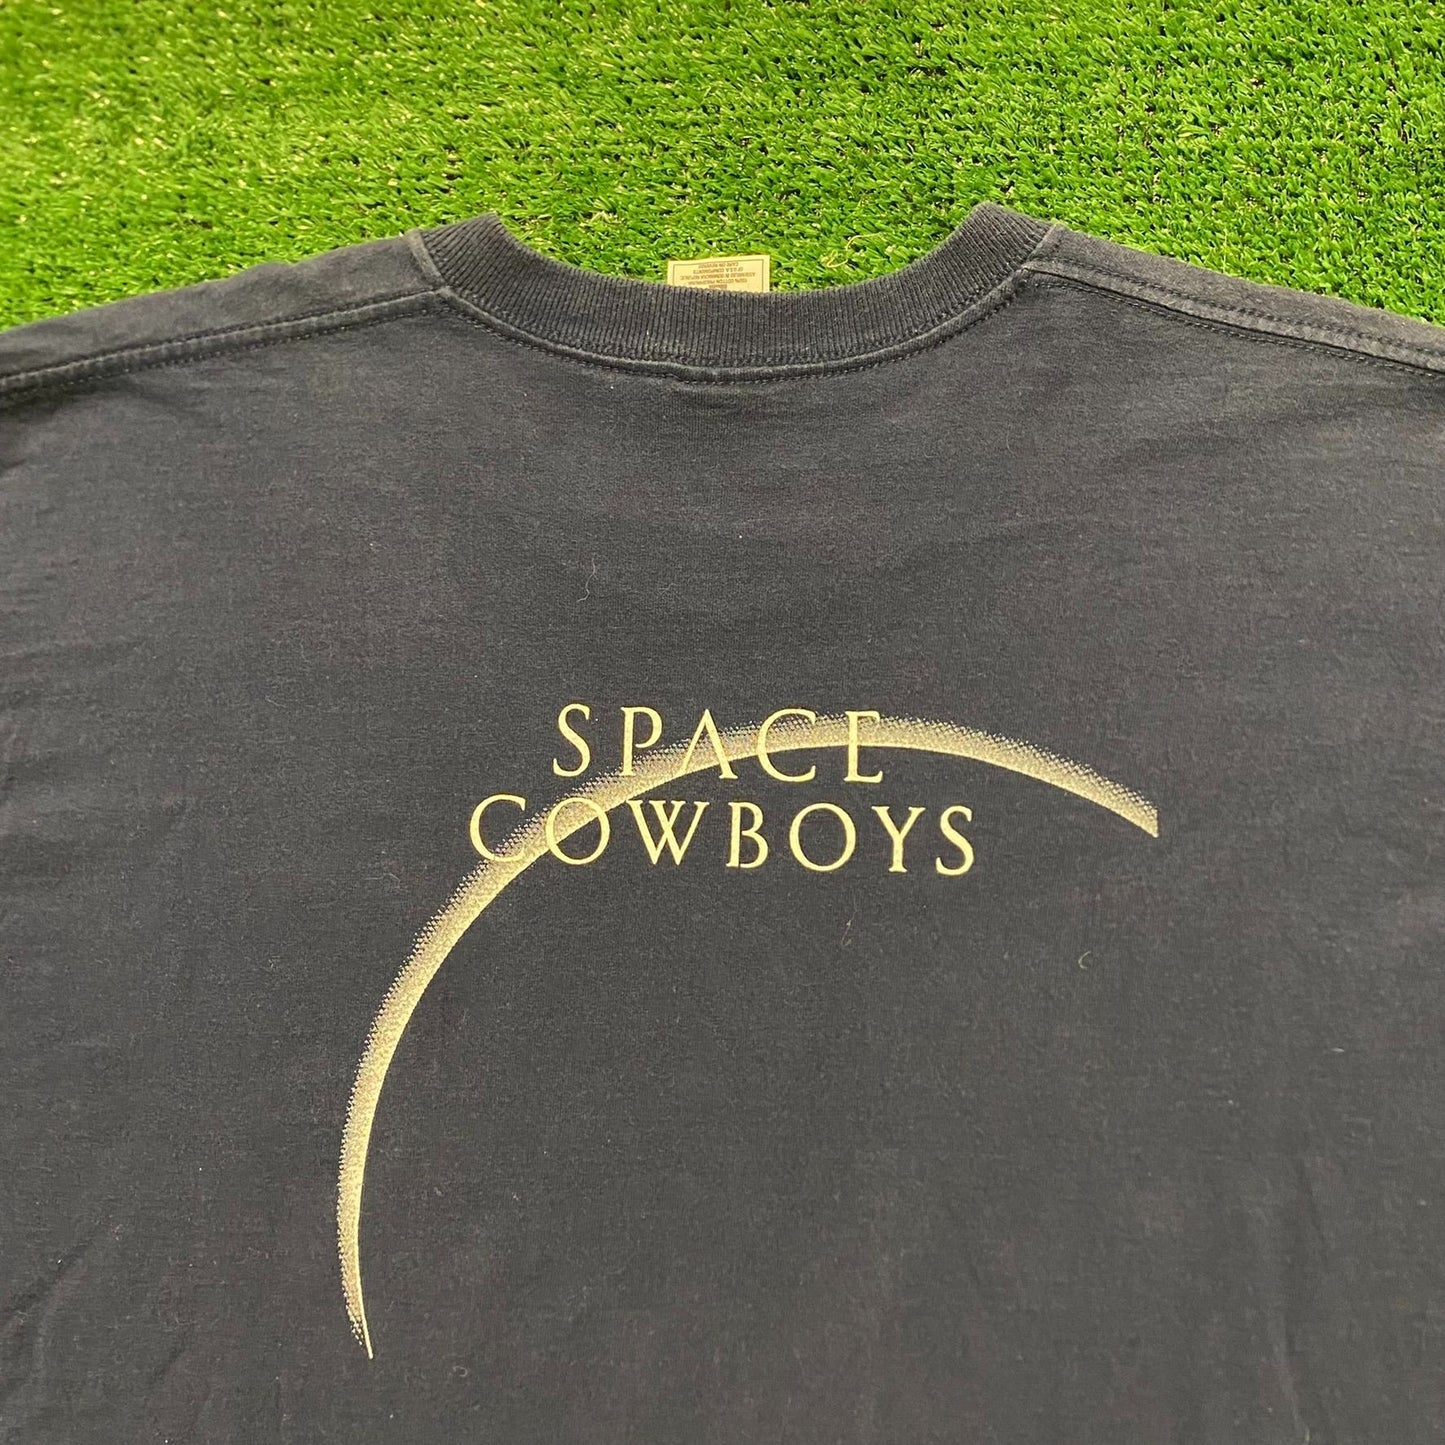 Warner Bros Space Cowboys Vintage Movie T-Shirt